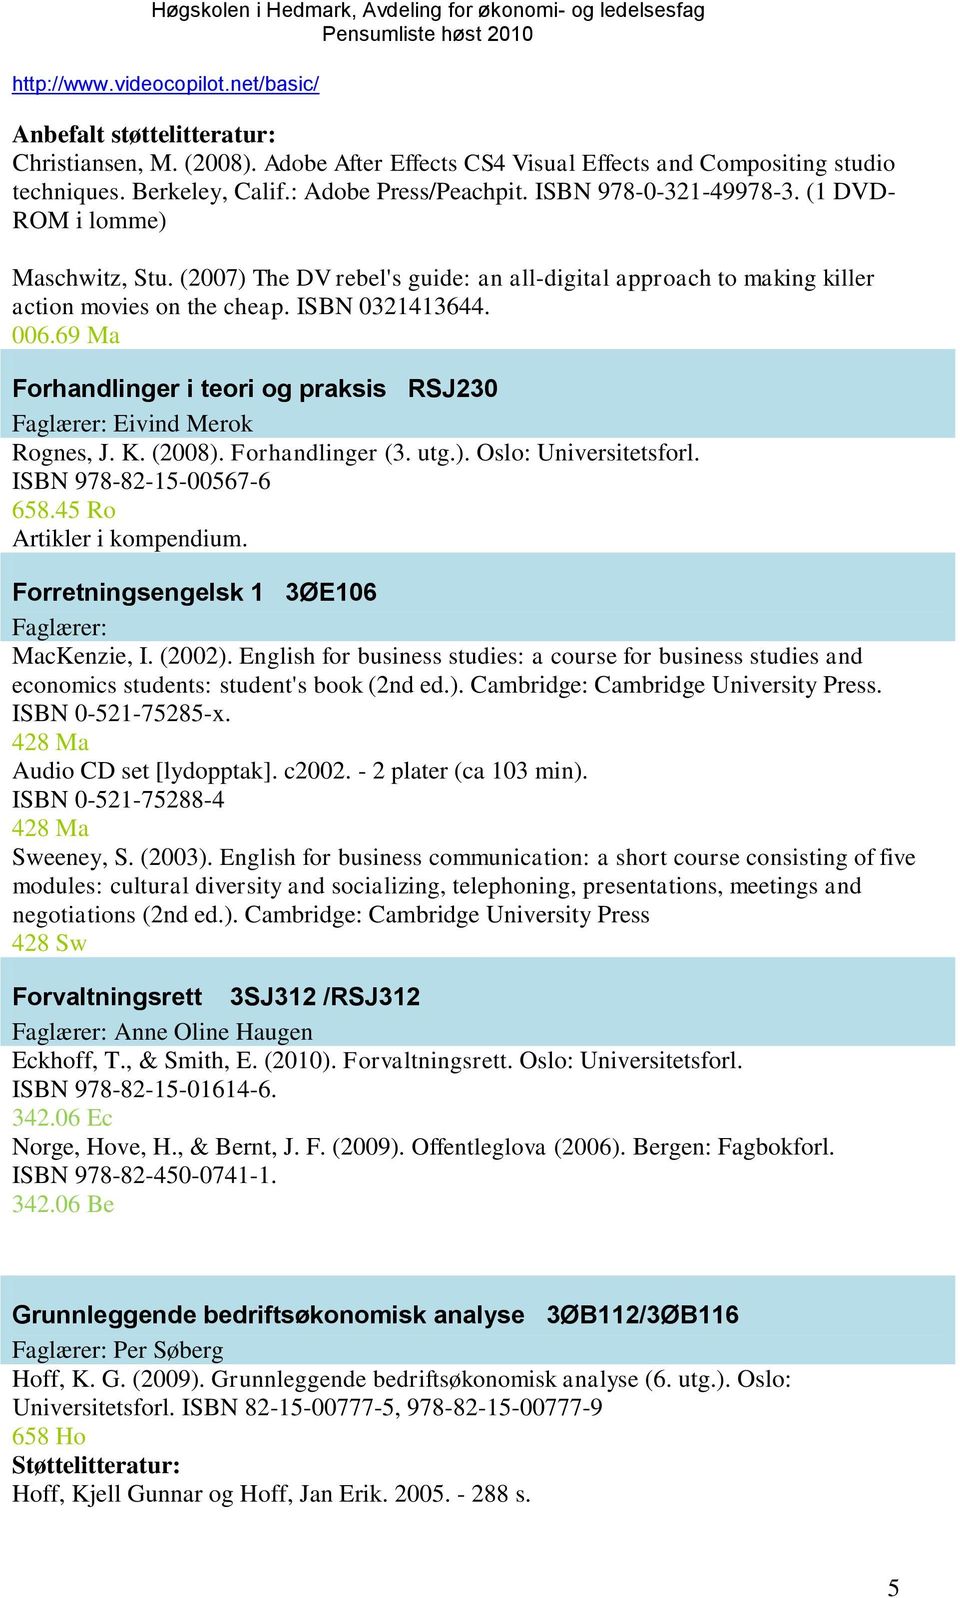 69 Ma Forhandlinger i teori og praksis RSJ230 Faglærer: Eivind Merok Rognes, J. K. (2008). Forhandlinger (3. utg.). Oslo: Universitetsforl. ISBN 978-82-15-00567-6 658.45 Ro Artikler i kompendium.